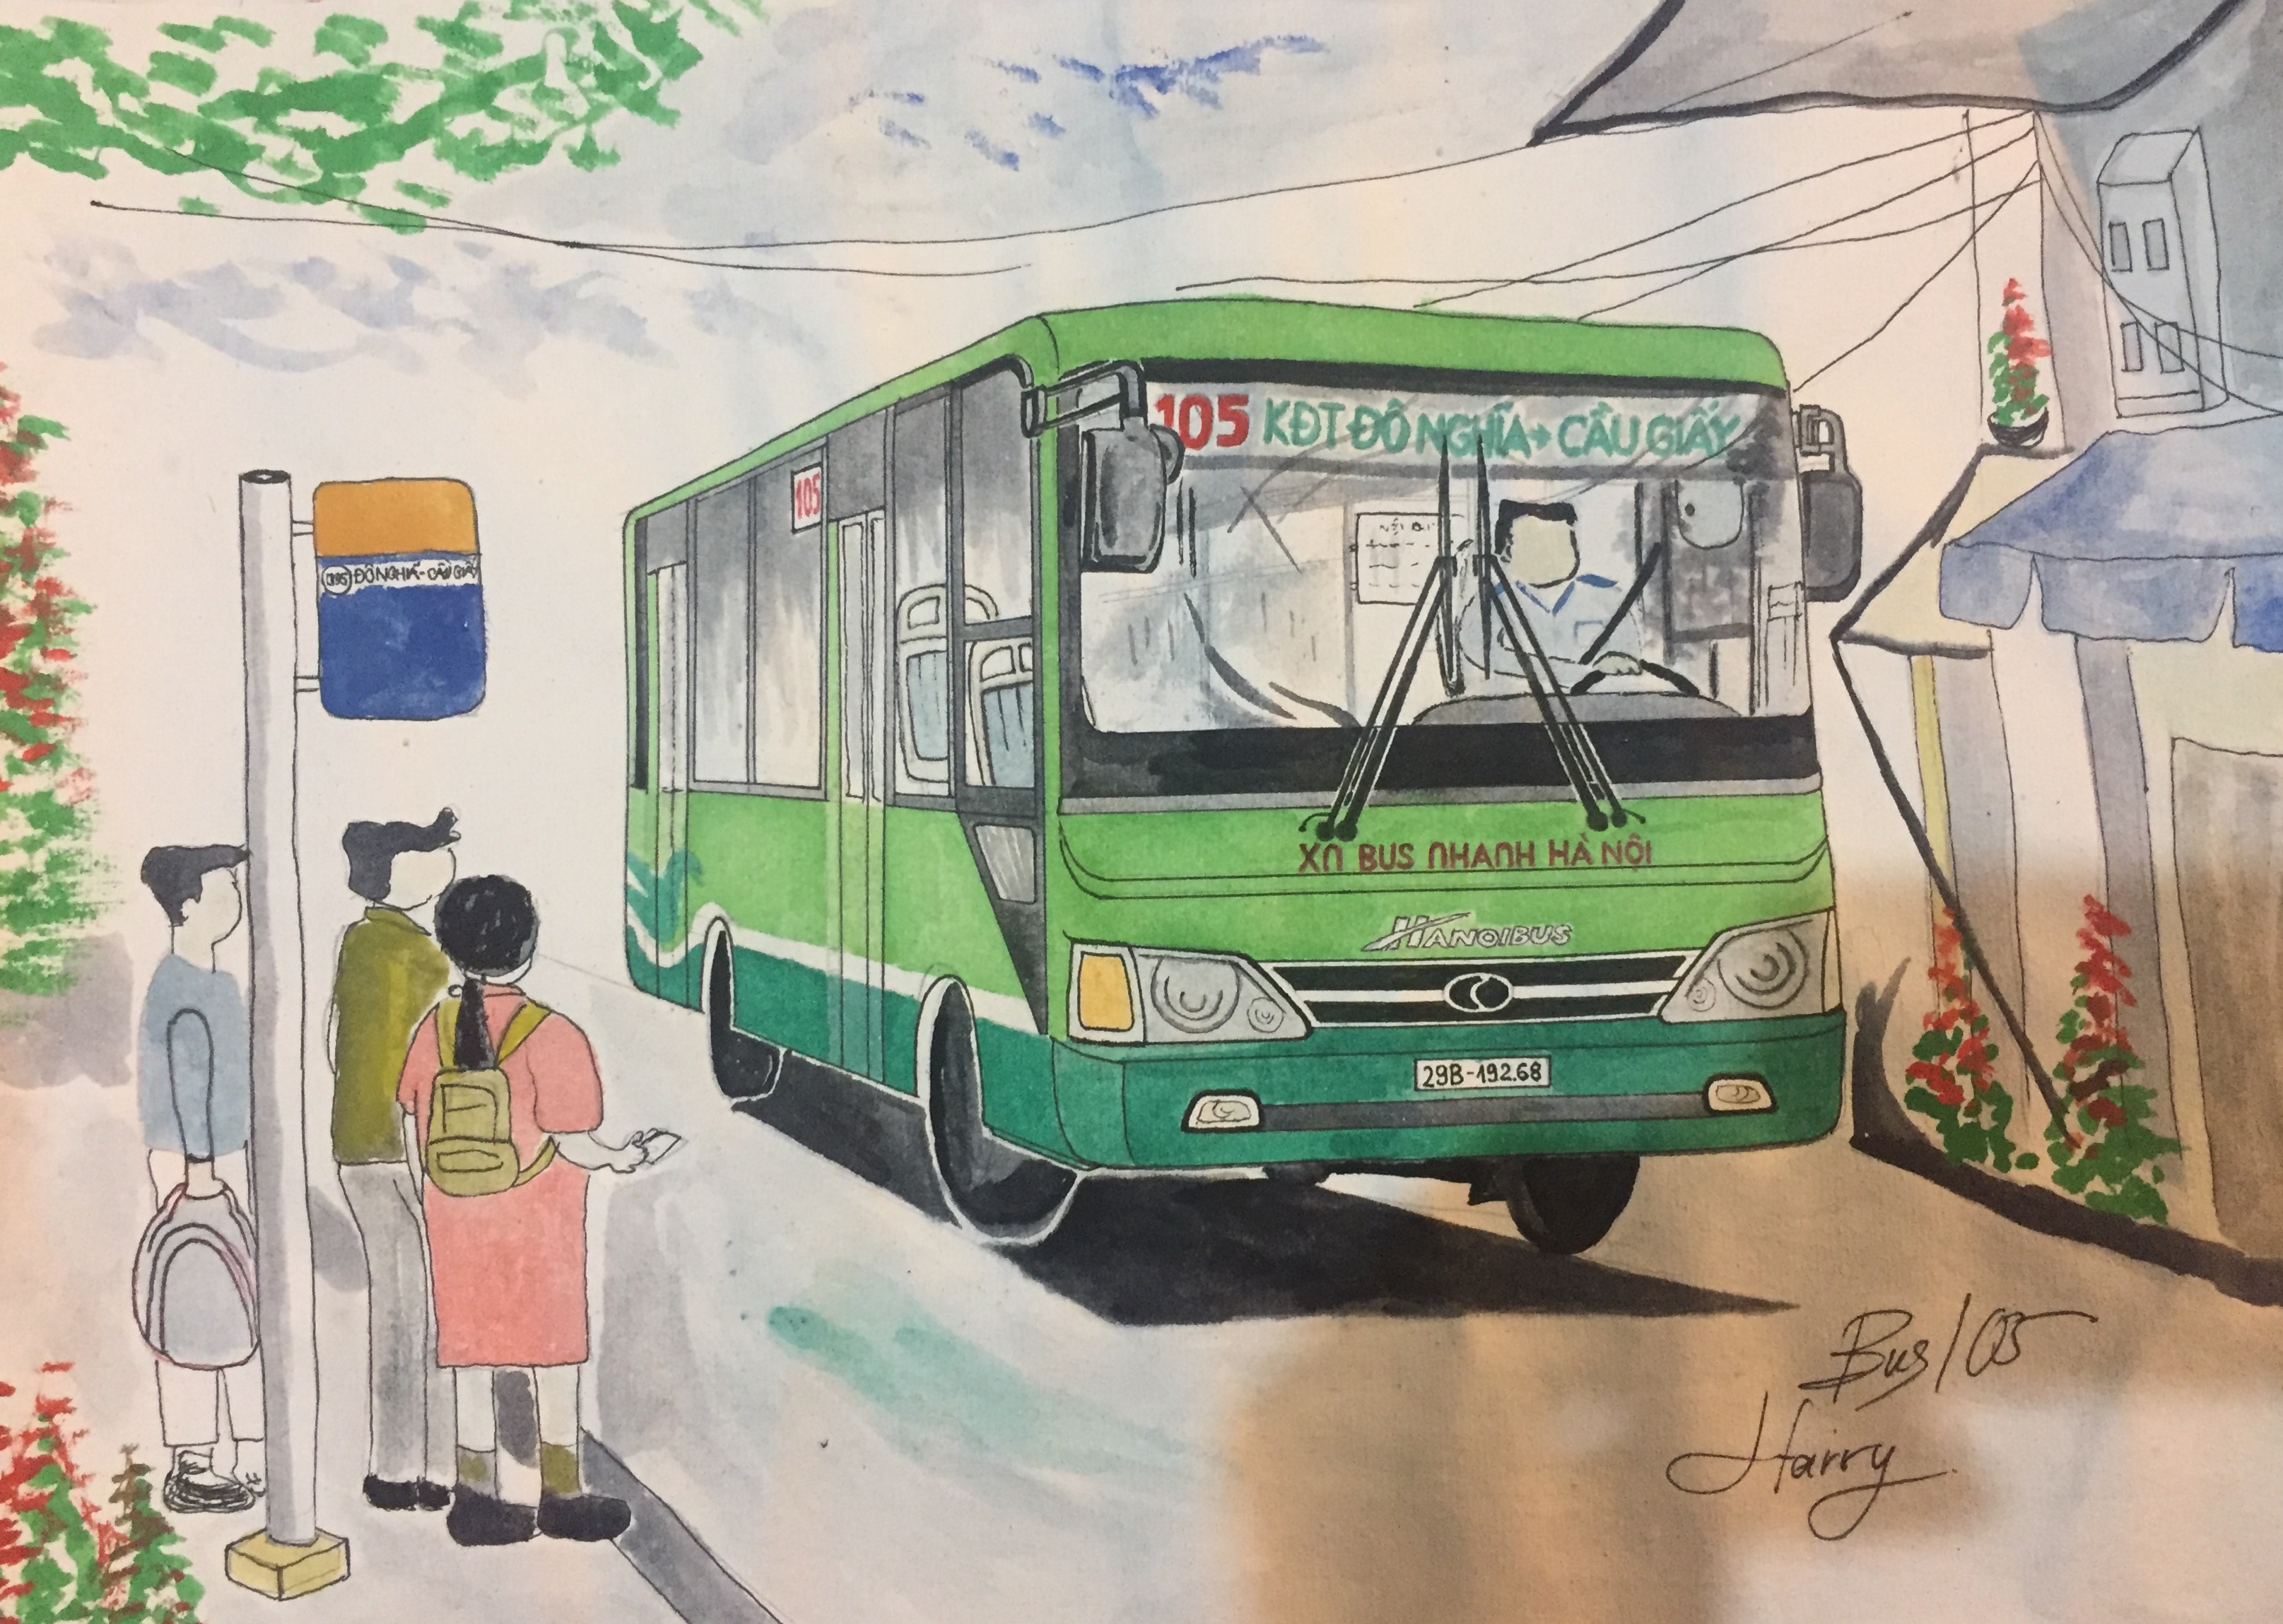 Xe buýt Hà Nội là những chuyến đi đáng nhớ để du khách khám phá thủ đô. Hành trình trên những con đường thành phố được ngắm nhìn từ trên cao sẽ là trải nghiệm không thể nào quên. Hãy nhấn vào hình ảnh để cùng trải nghiệm một chuyến xe buýt đầy hi vọng.